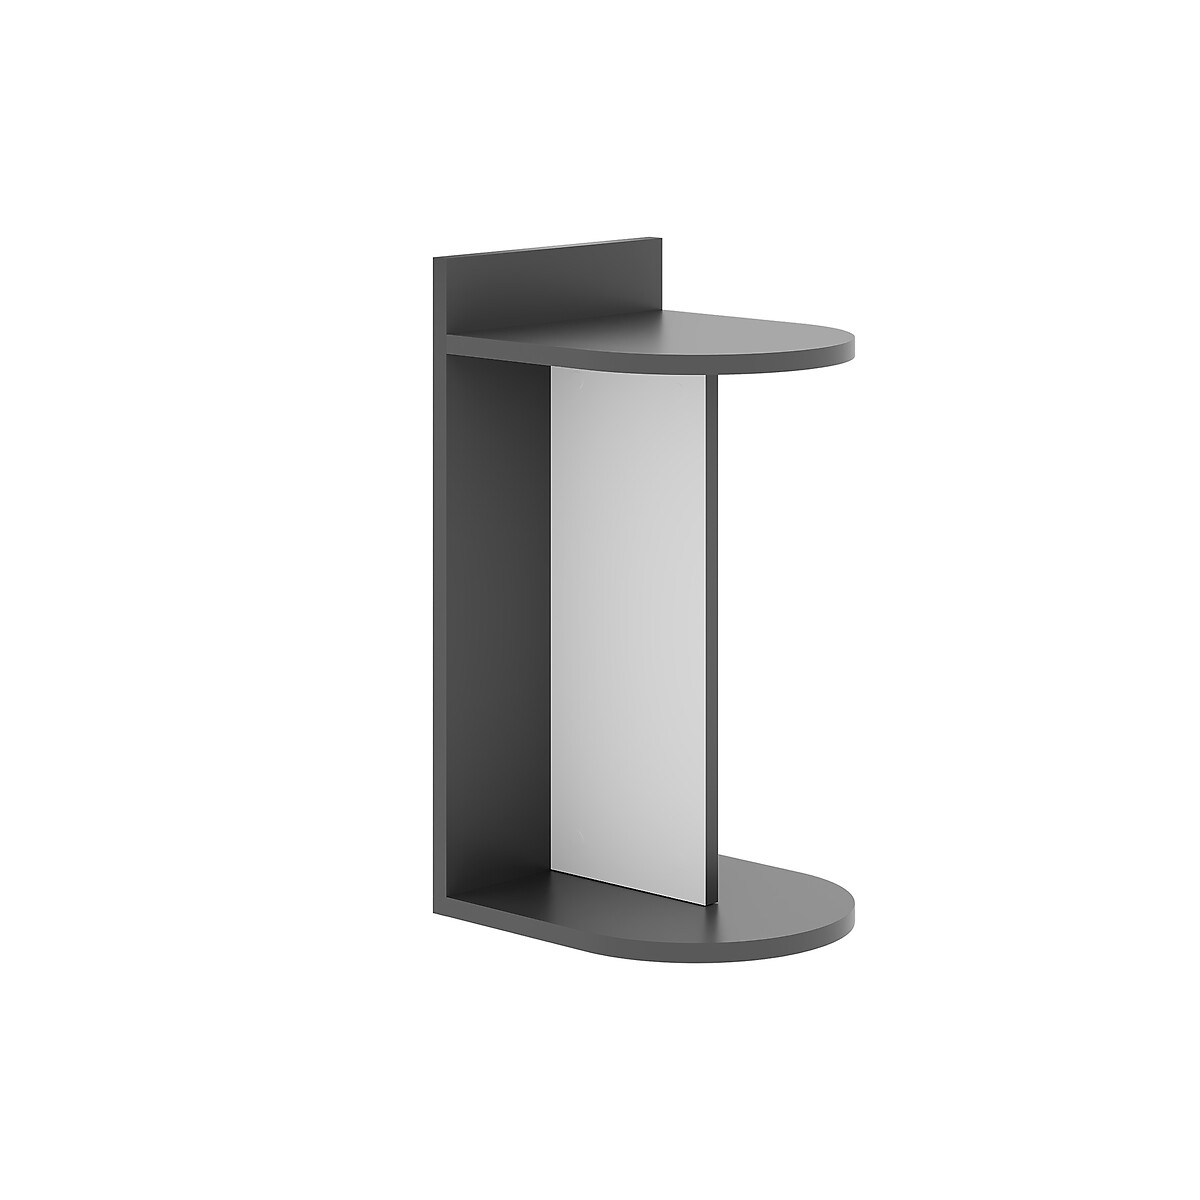 Стол приставной DOM SIDE TABLE единый размер серый